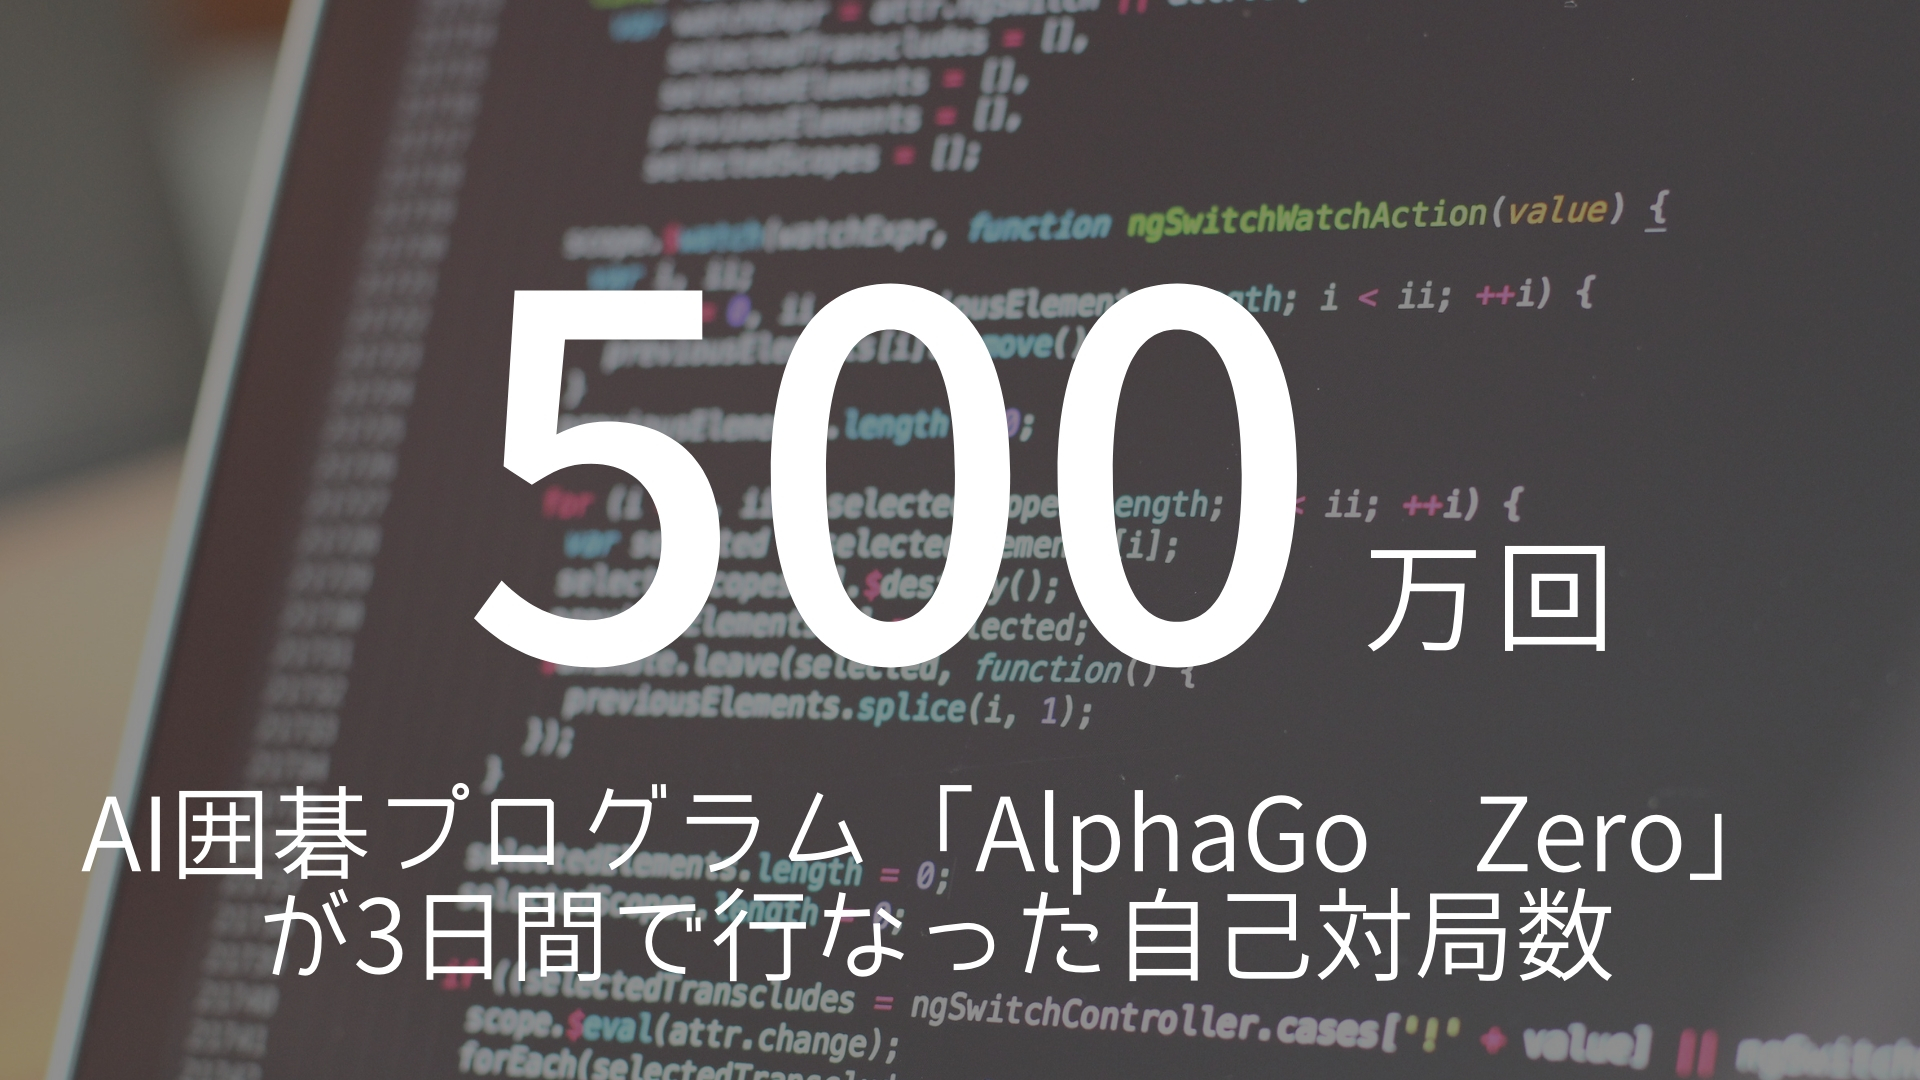 「500万回」 >>> 人間では不可能な量と質、スピードでの試行錯誤回数、これが人工知能の真骨頂。AI囲碁プログラム「AlphaGo Zero」が3日間で行なった自己対局数